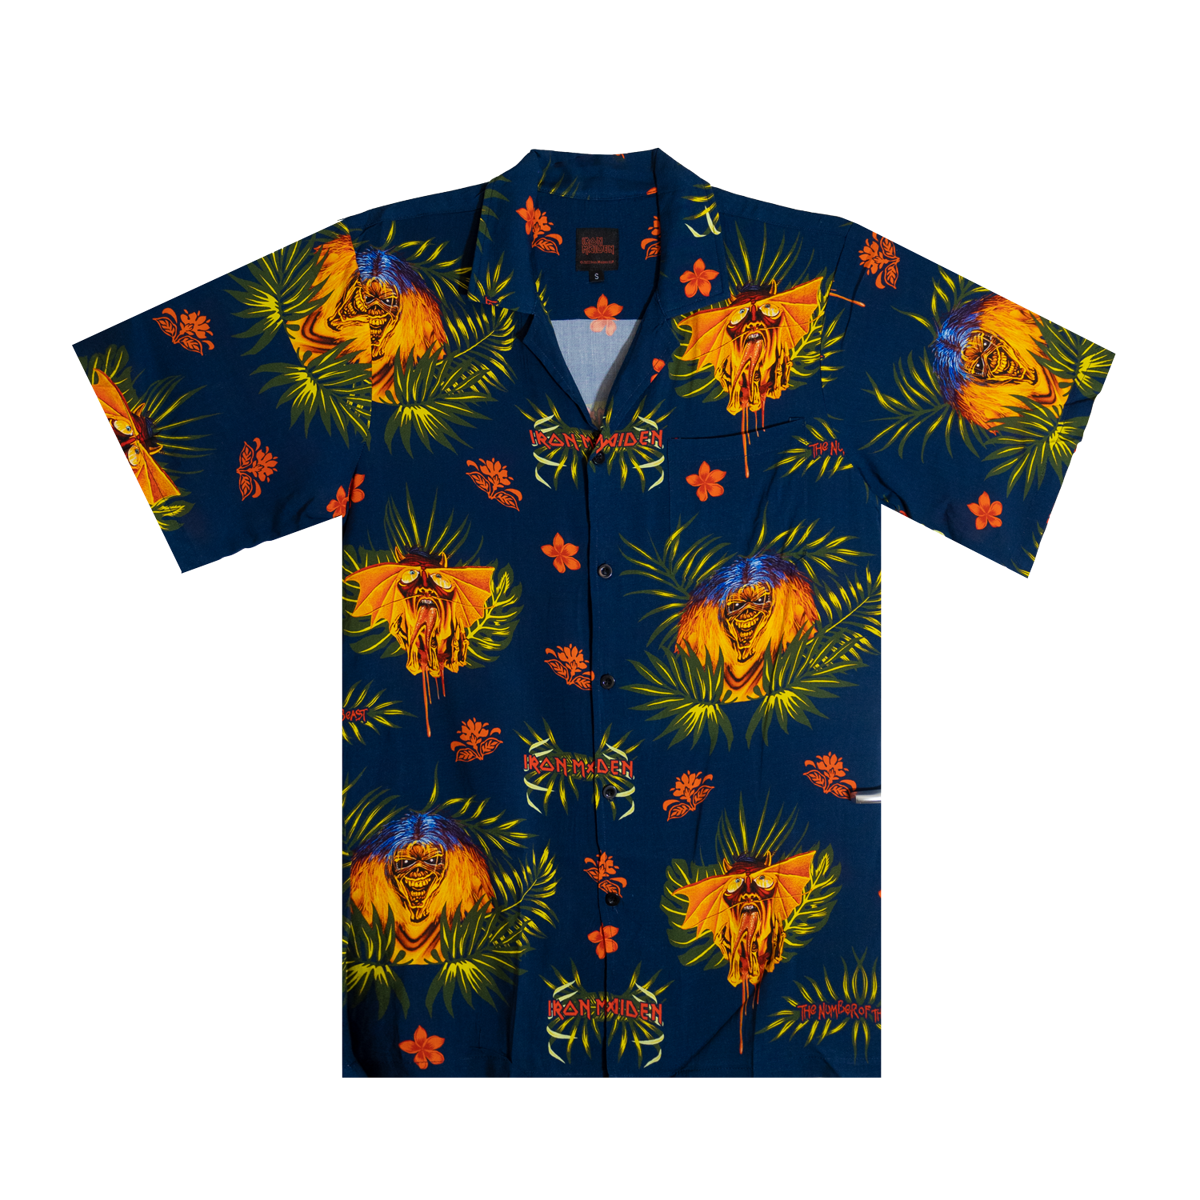 Camisas estampadas, ¿son de gilipollas? - Página 9 Number-of-the-beast-hawaiian-shirt?u=aHR0cHM6Ly9tdXNpY2dsdWUtdXNlci1hcHAtcC0xLXAuczMuYW1hem9uYXdzLmNvbS9vcmlnaW5hbHMvZTUxM2ZkODQtYTY1MC00NjM2LWI2NWEtZDdkOGUzNWYxMzdj&width=1200&mode=contain